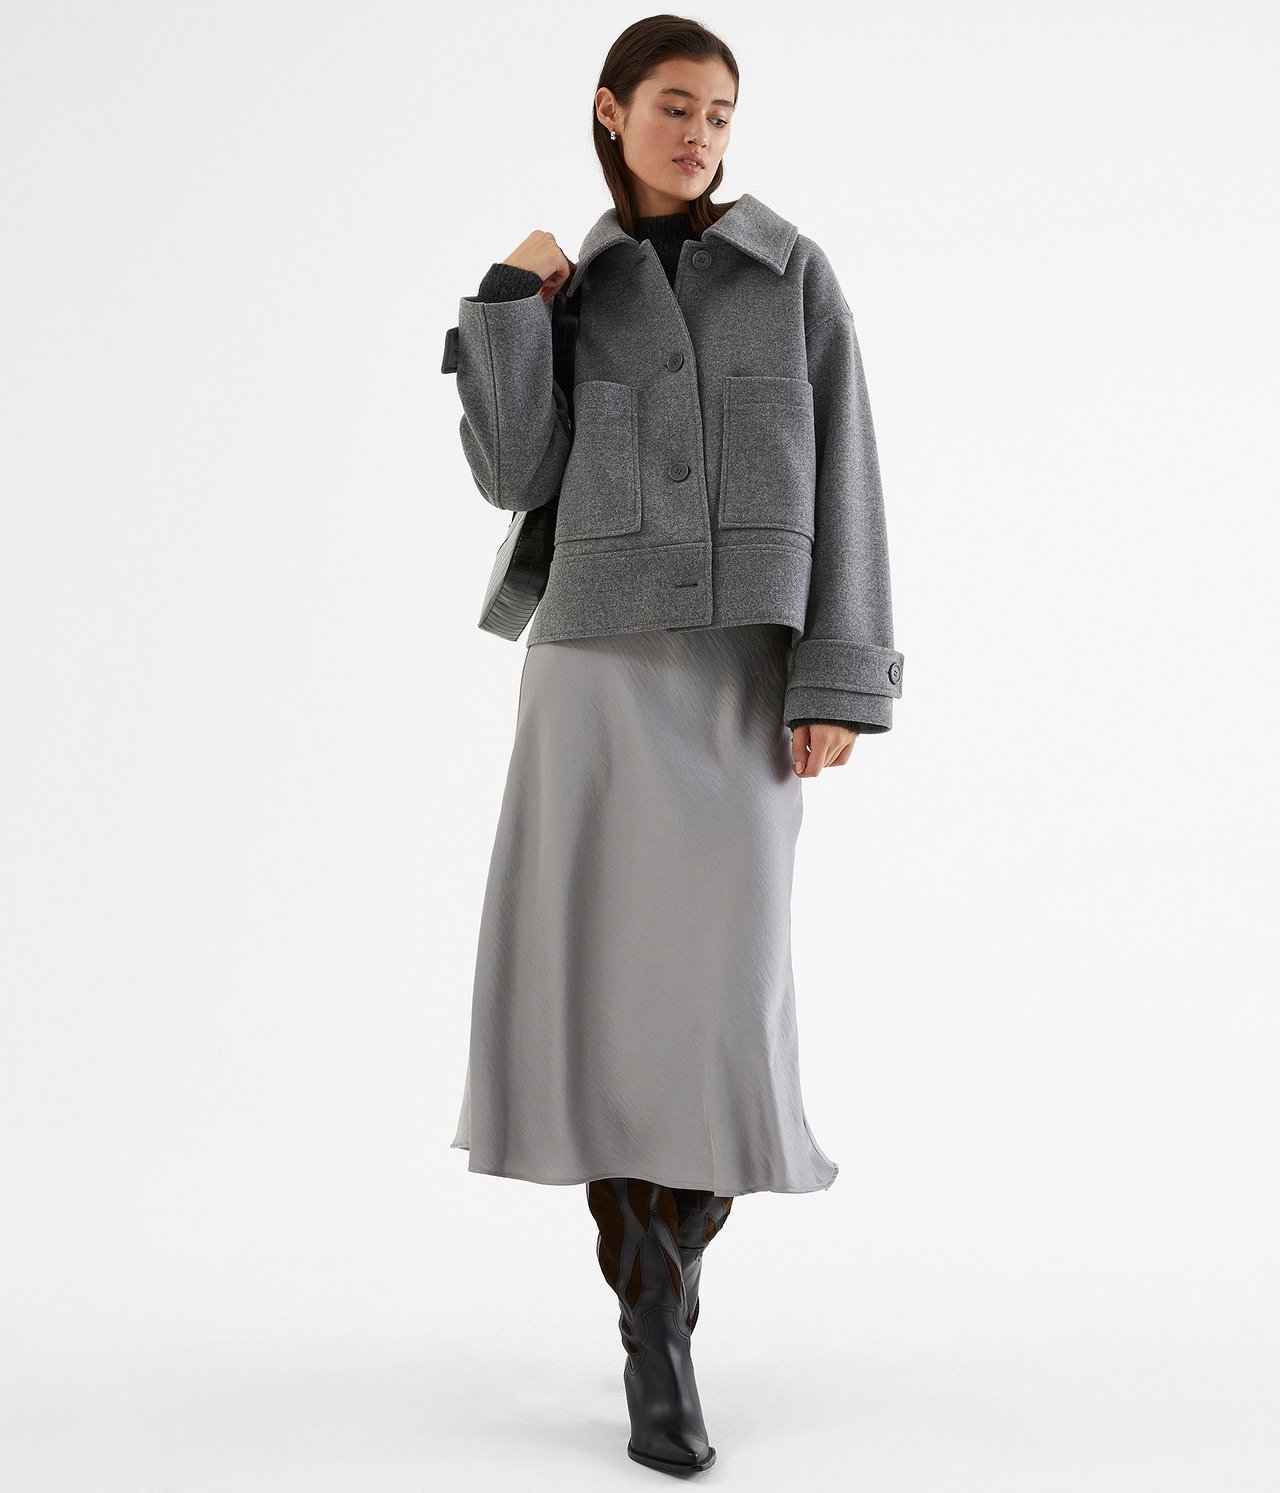 Cropped jakke - Mørkegrå - 178cm / Storlek: S - 1